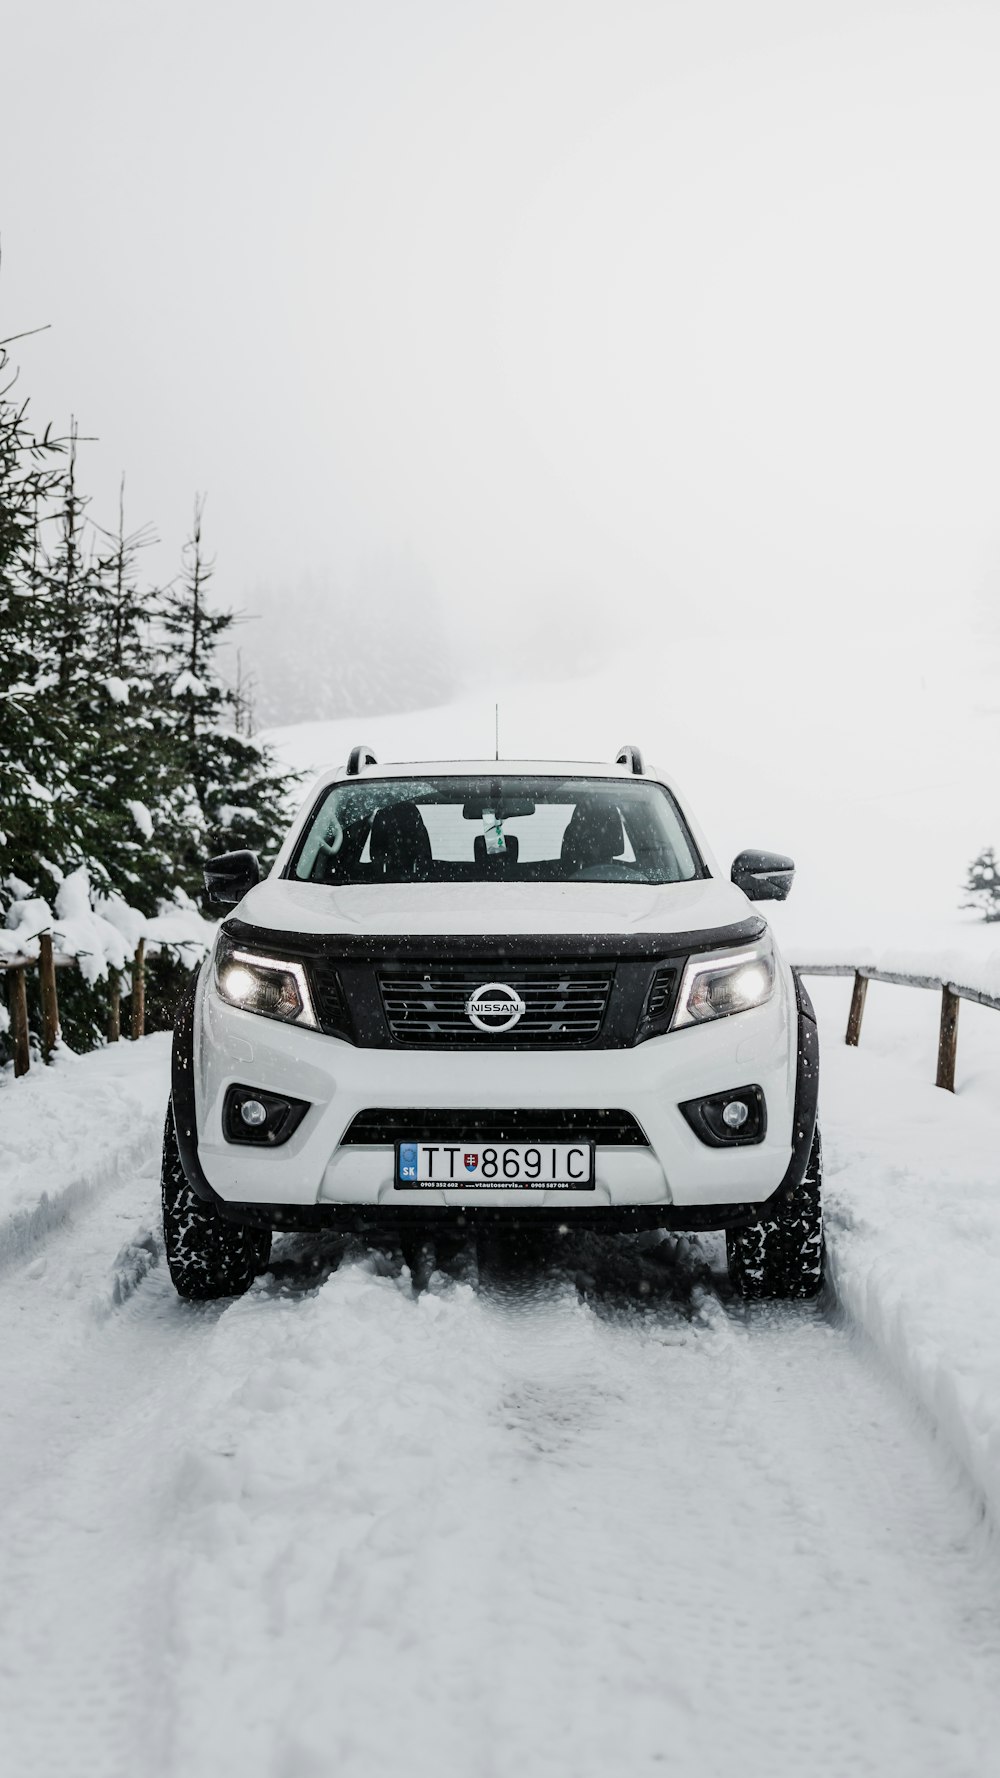 SUV Nissan gris en carretera cubierta de nieve durante el día